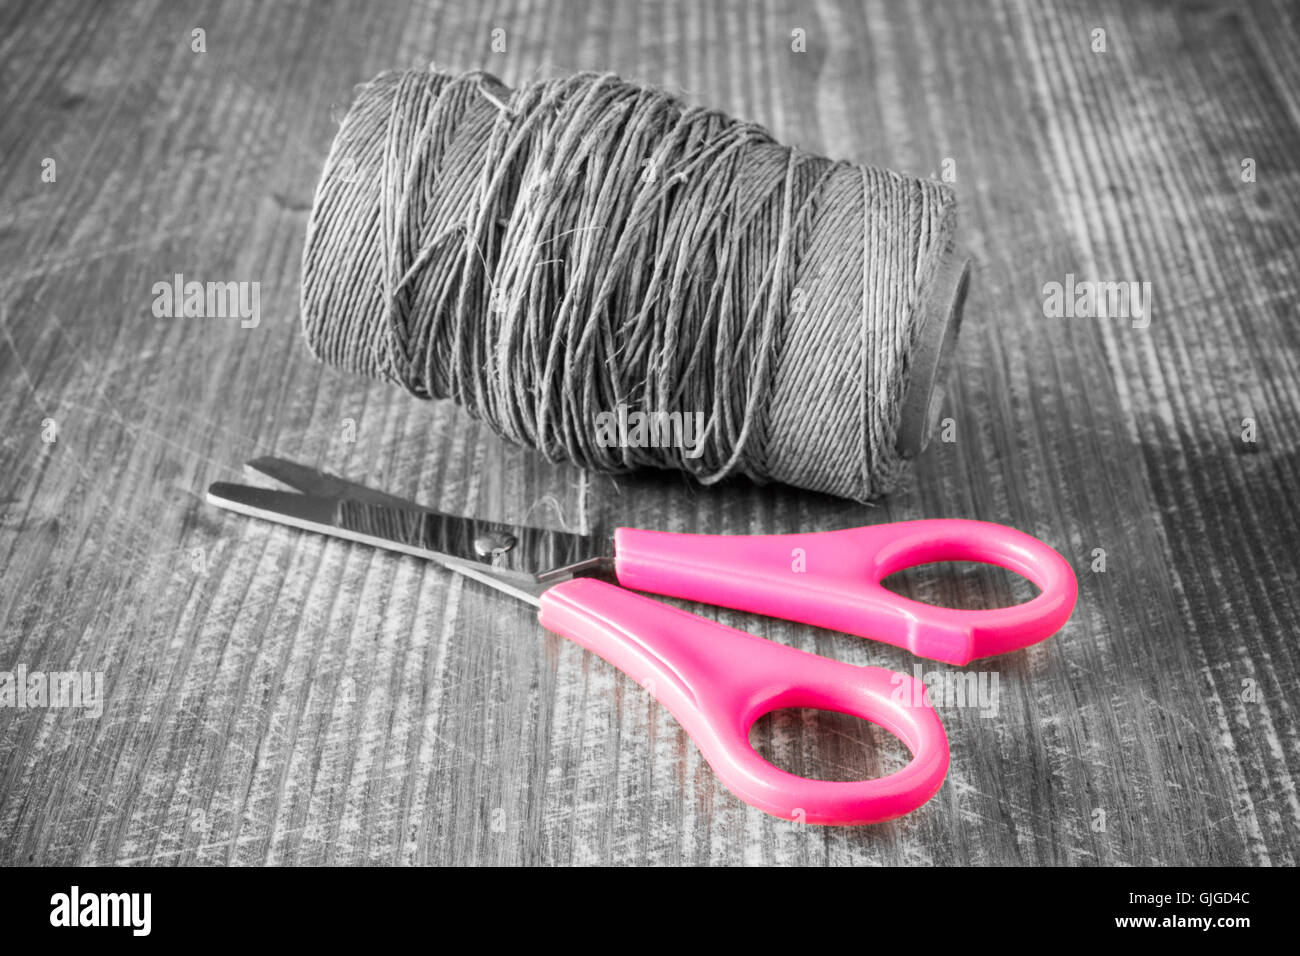 costura-costurera-hilo-aguja-tijeras-metro-coser-textil-negro-amarillo-dedal-cremallera  Stock Photo